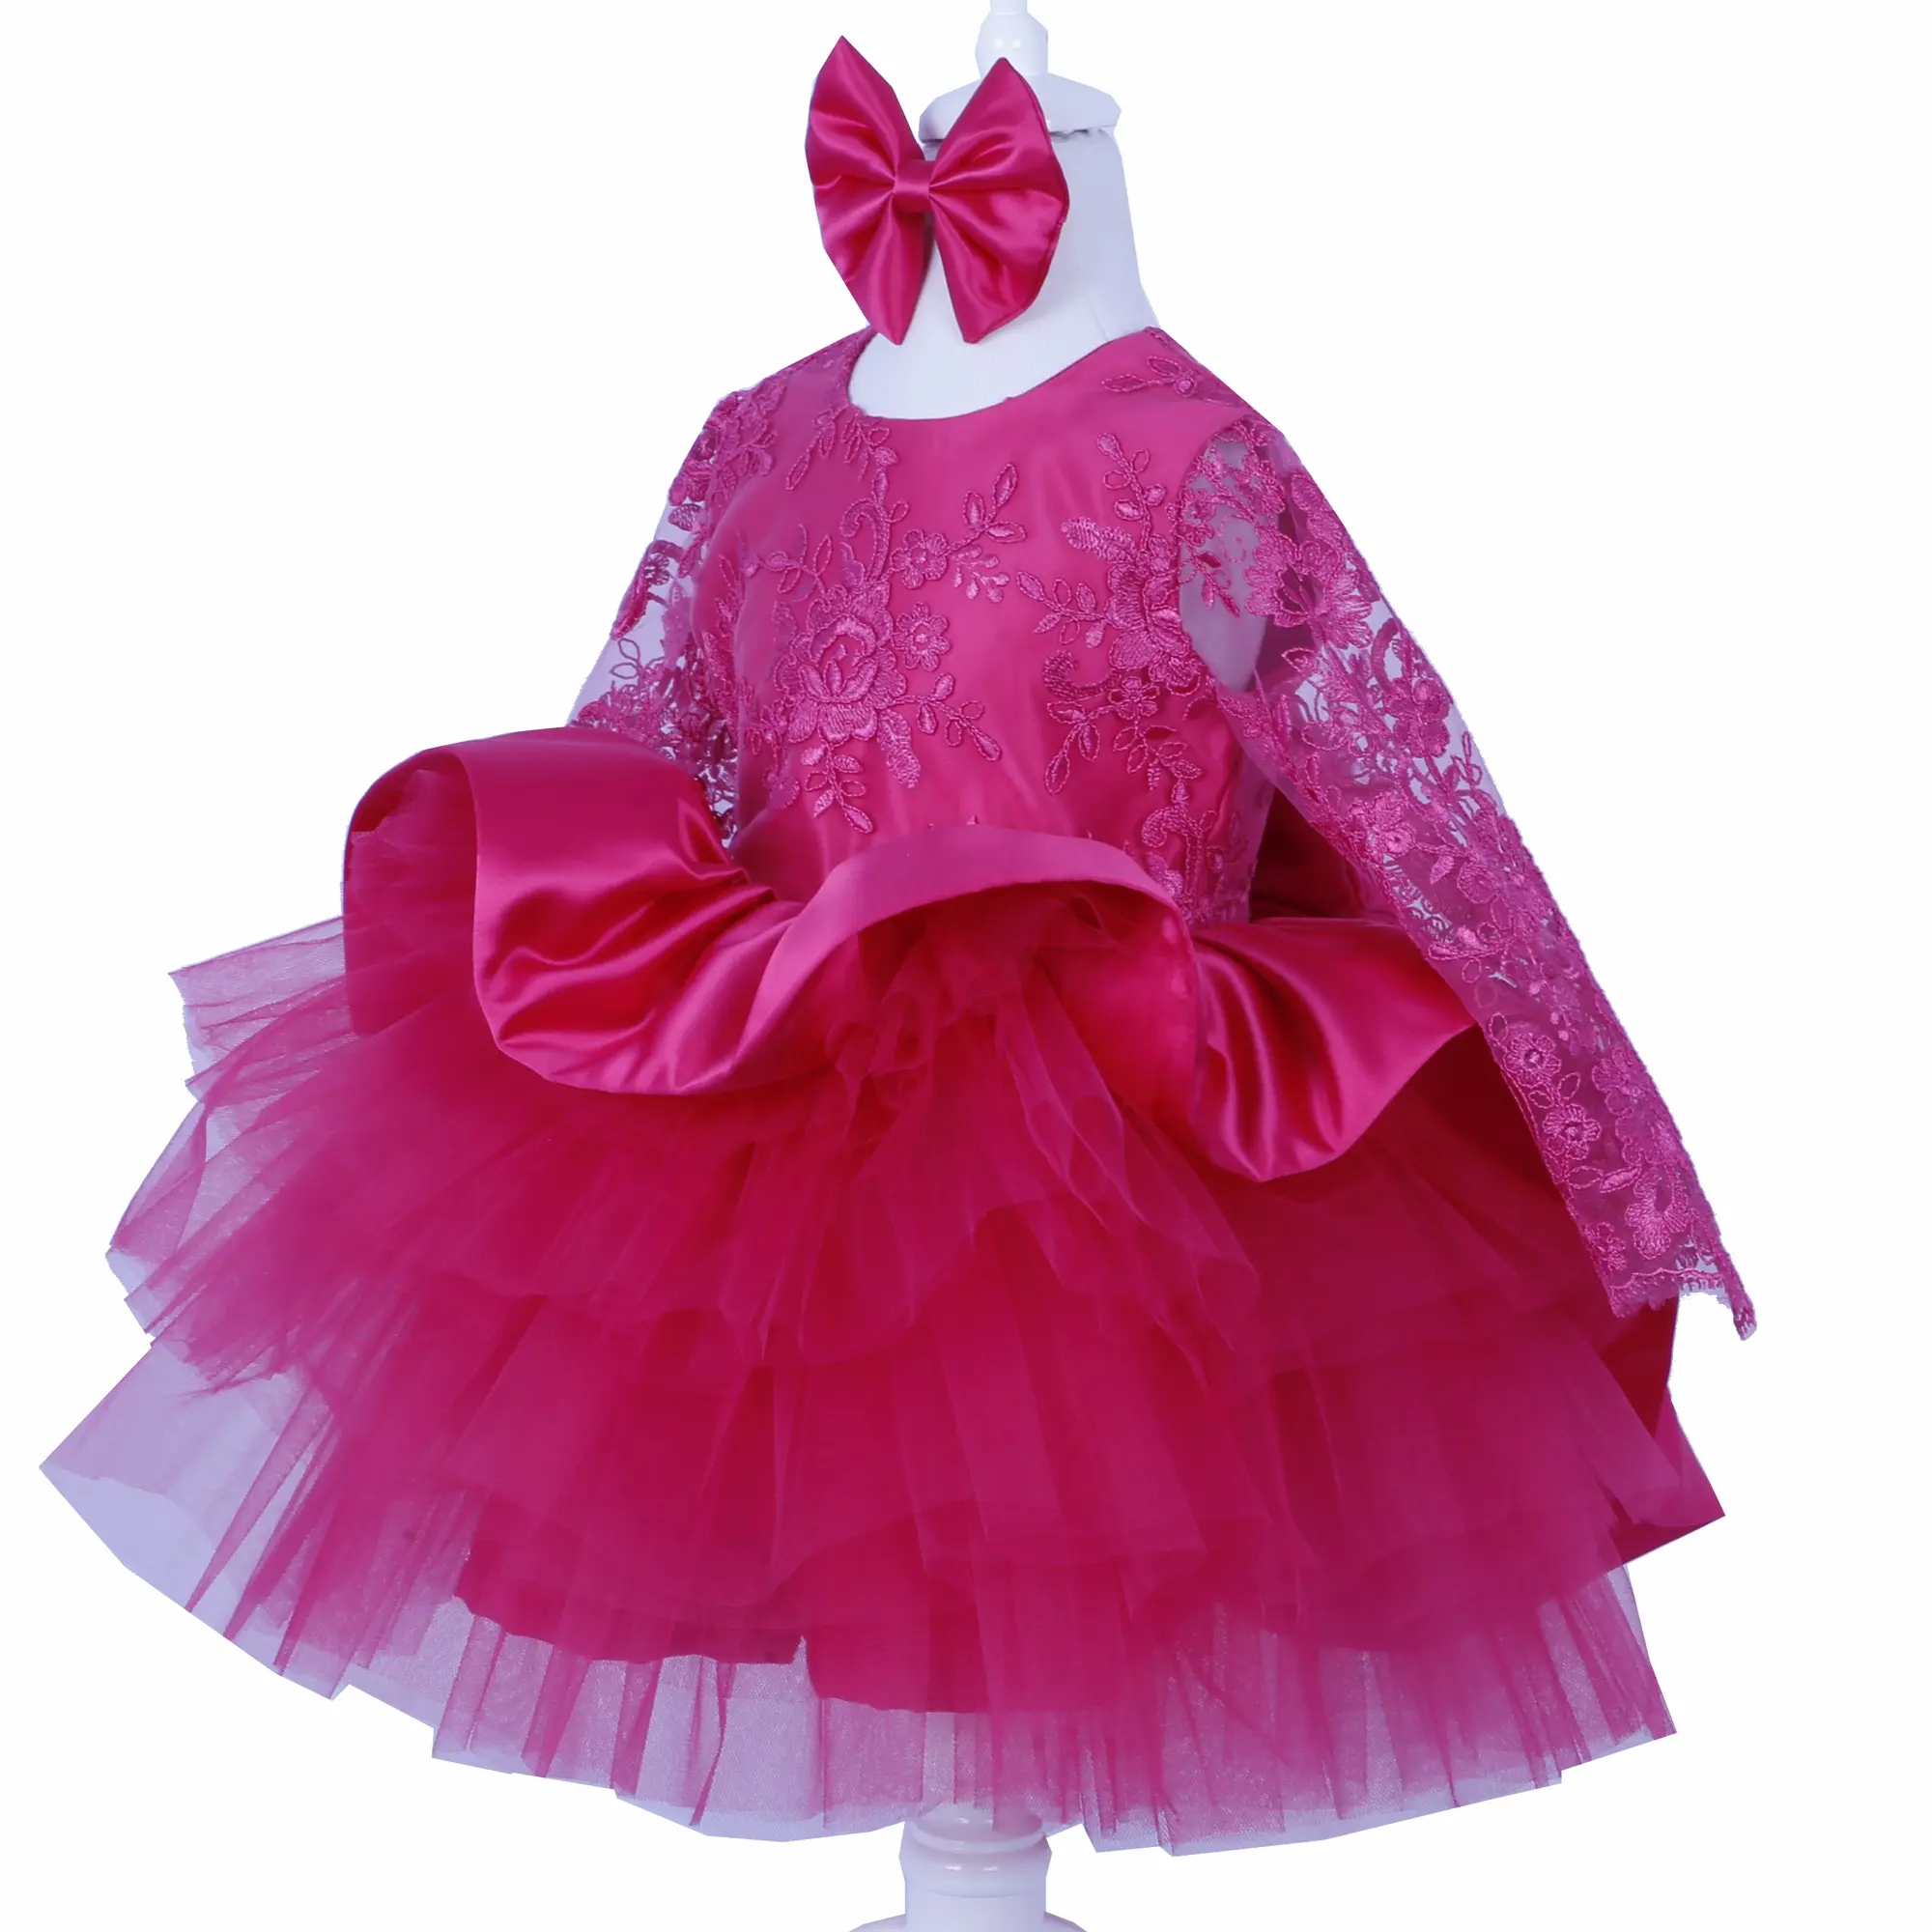 लक्जरी सुंदर डिजाइन कस्टम उच्च गुणवत्ता वाले कपड़े लड़की कपड़े गर्मी के कपड़े जन्मदिन लड़कियों बच्चे पोशाक पार्टी शादी आधुनिक